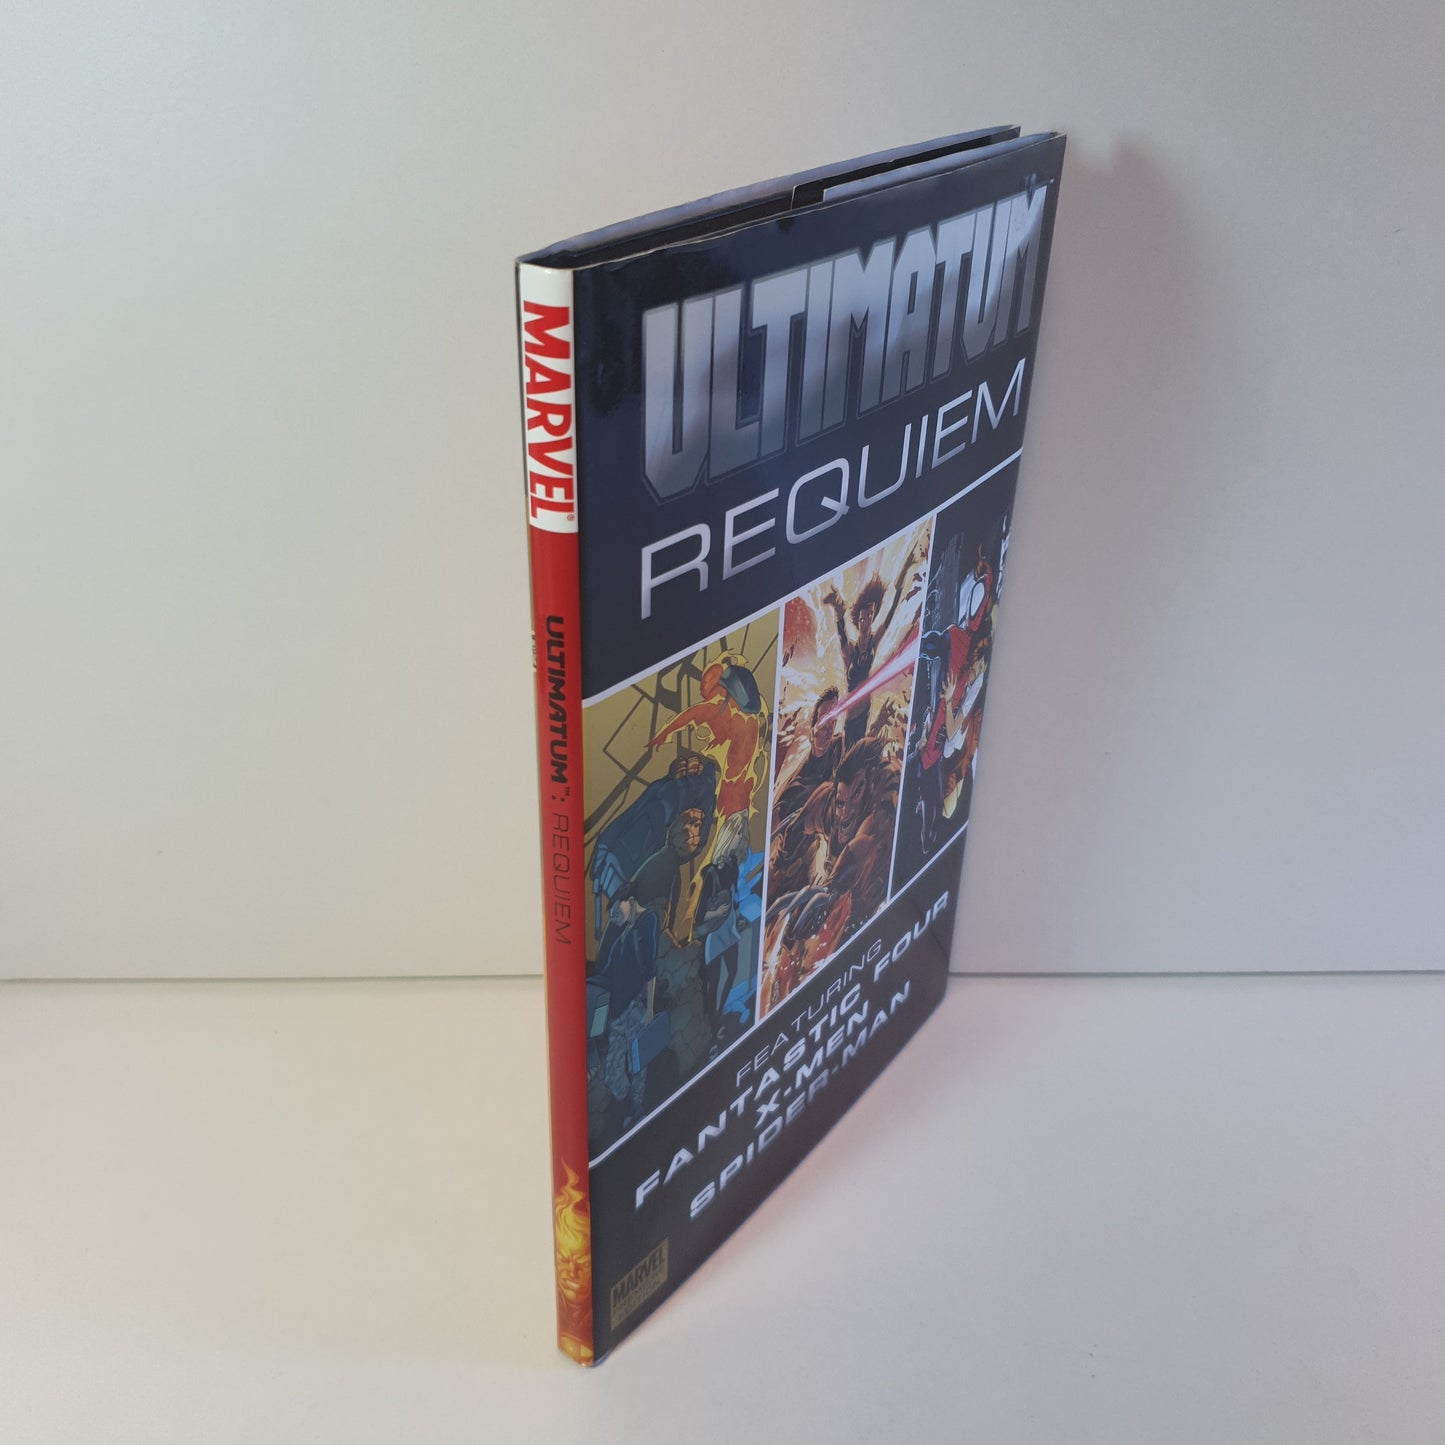 Ultimatum Requiem - featuring Fantastic Four, X-Men & Spider-Man (2009)